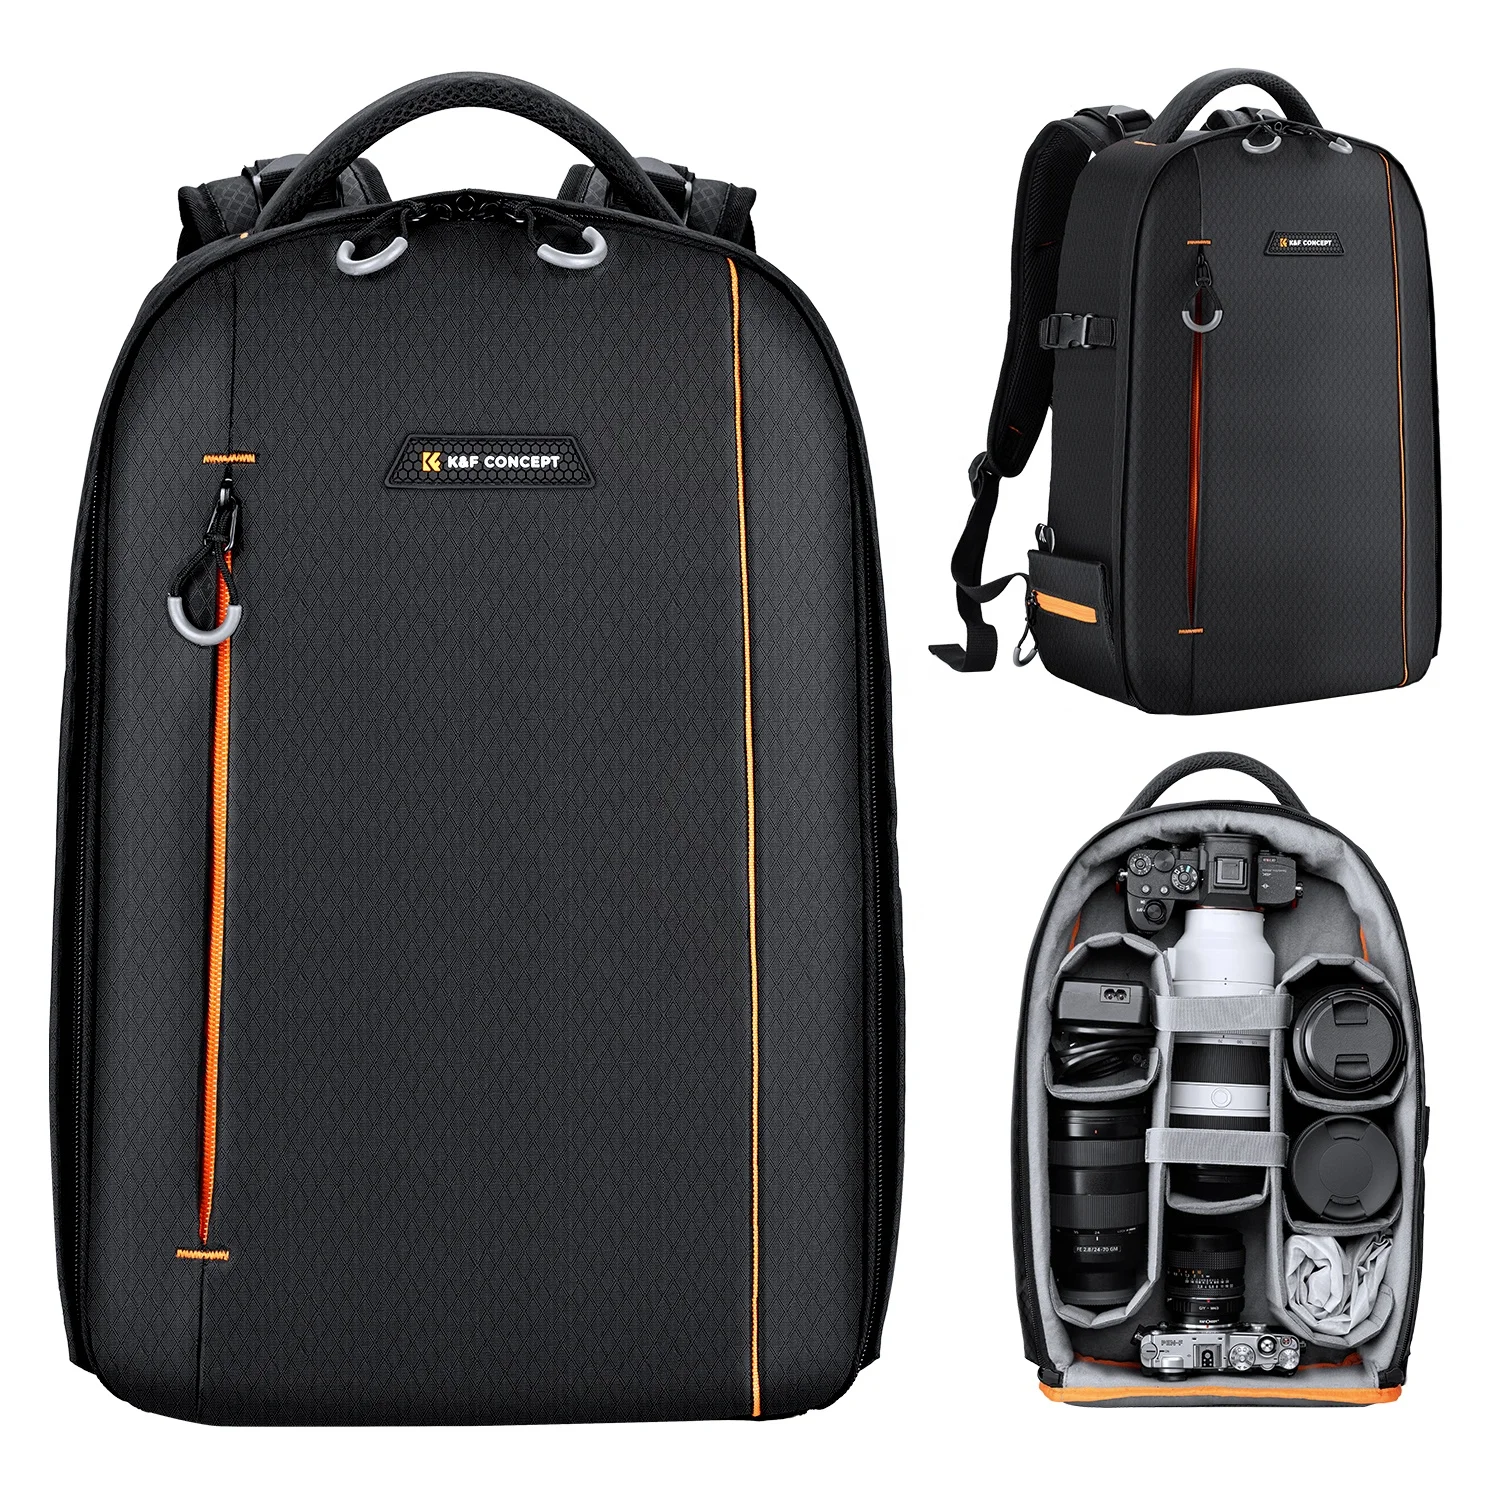 K&F Concept DSLR Camera Backpack Waterproof camera bag for SLR/DSLR cameras lenses and accessories in black (1600665138542)